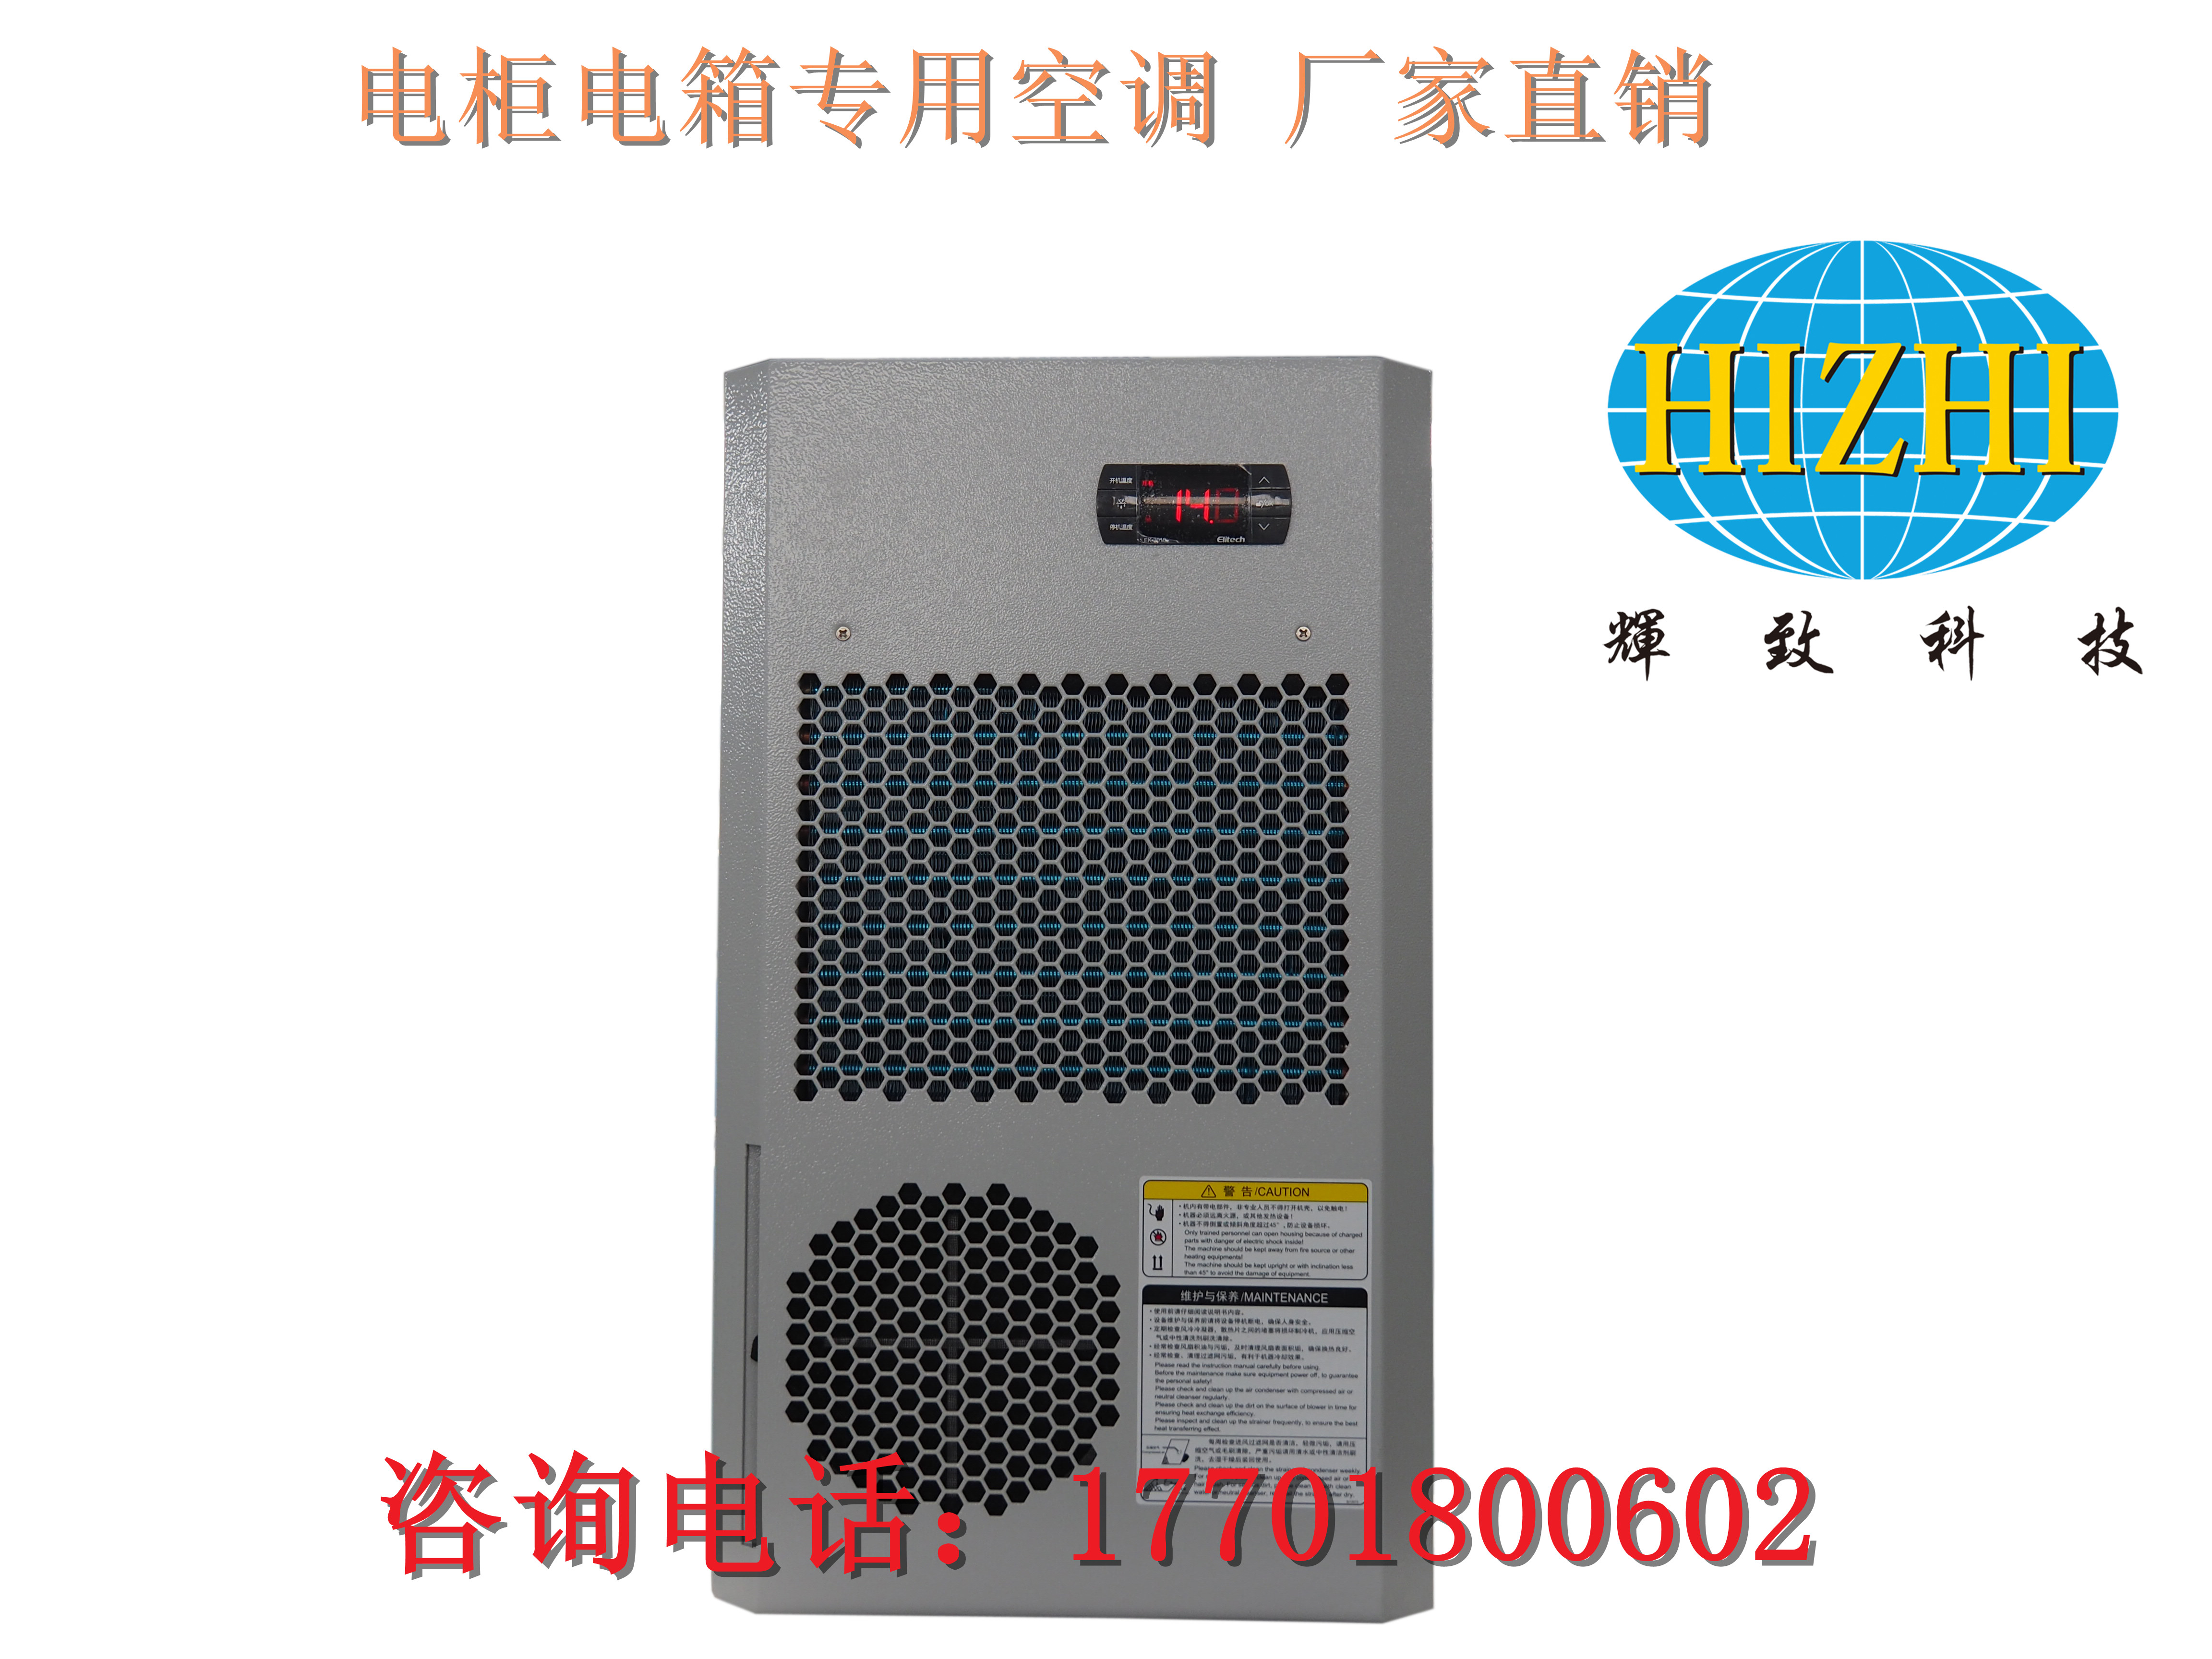 电箱空调机，机床控制柜制冷机小型一体压缩机空调机，控制柜上用的空调